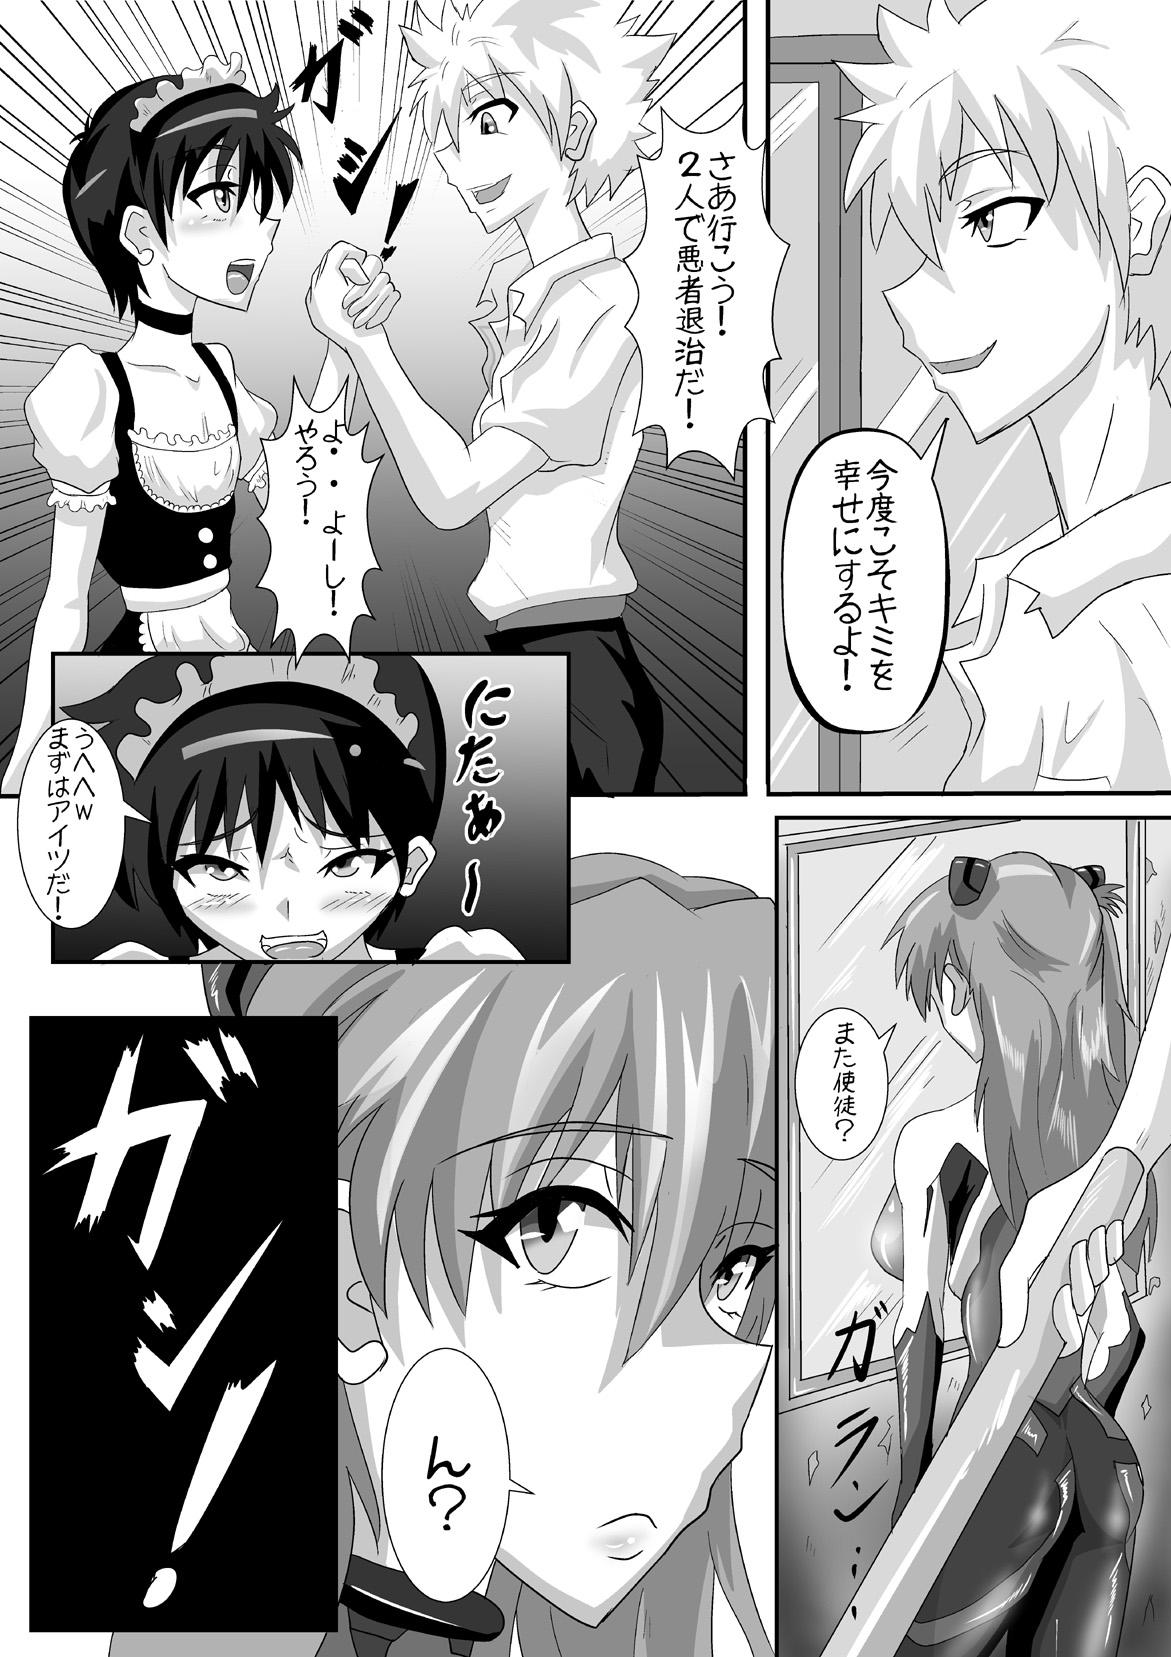 Licking Pussy Shinji-kun no Makeikusa - Neon genesis evangelion Chacal - Page 5